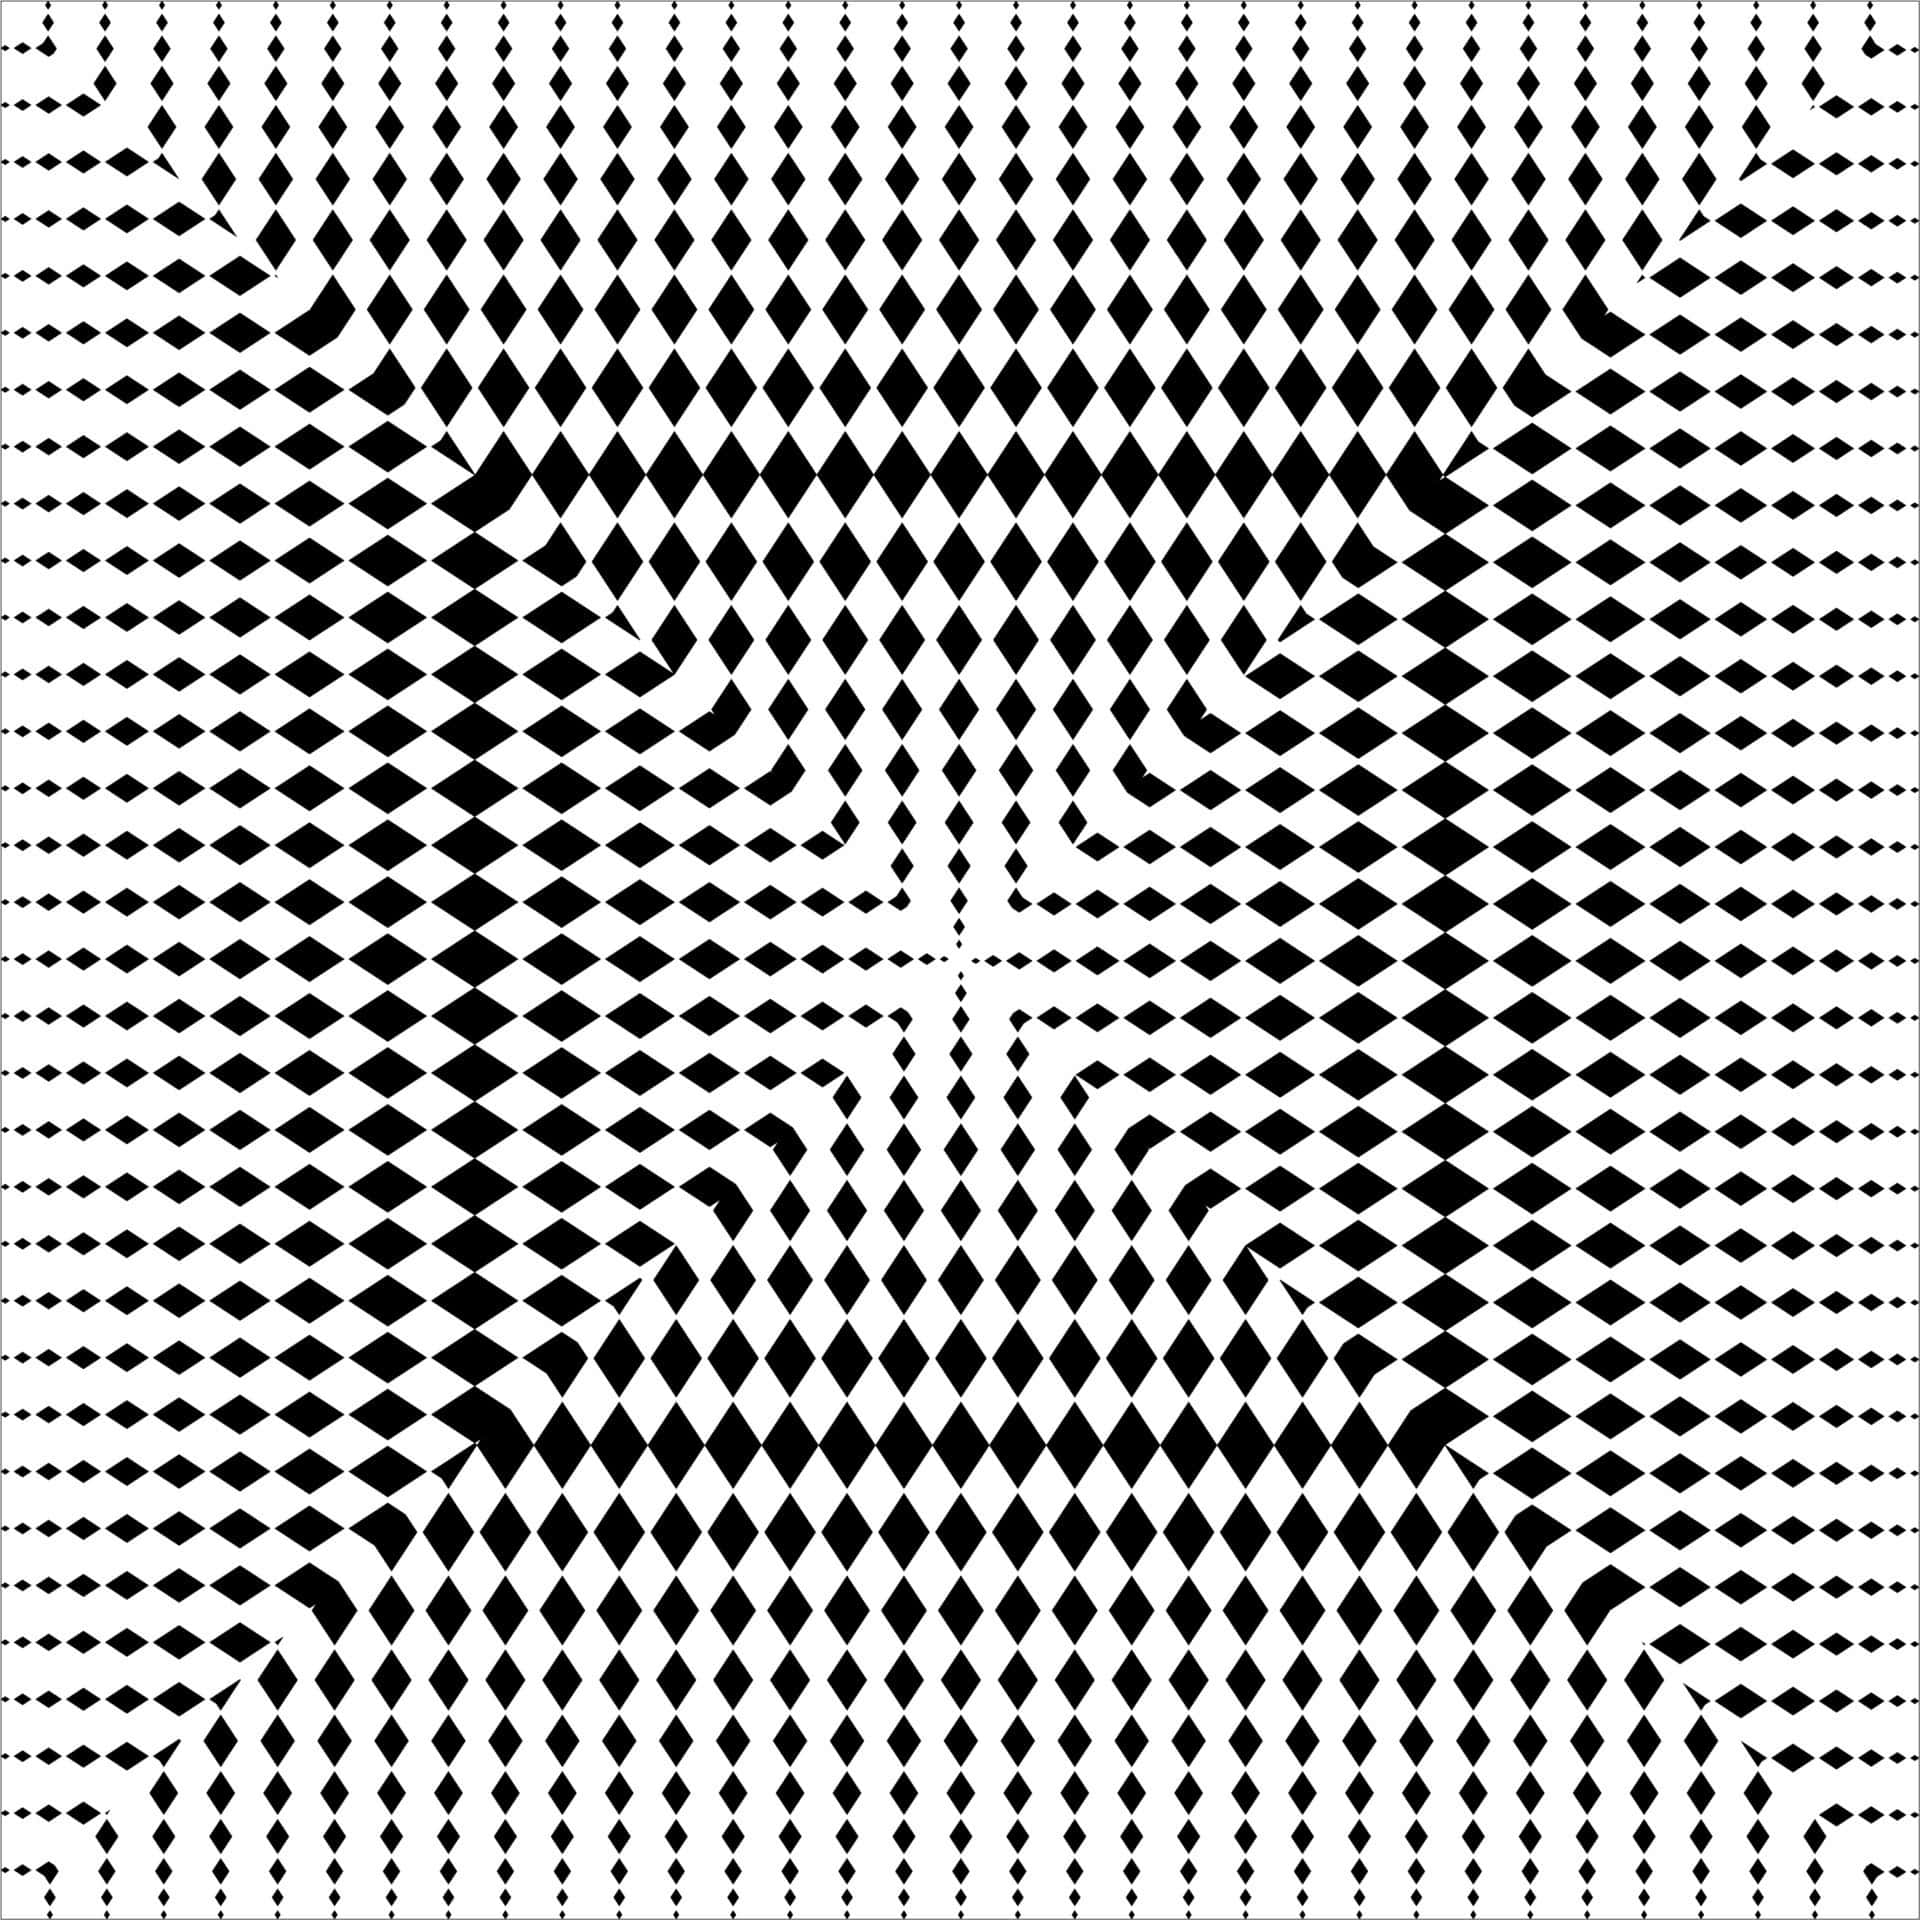 Undgå fængslet fra Perception med dette cool optiske illusion. Wallpaper